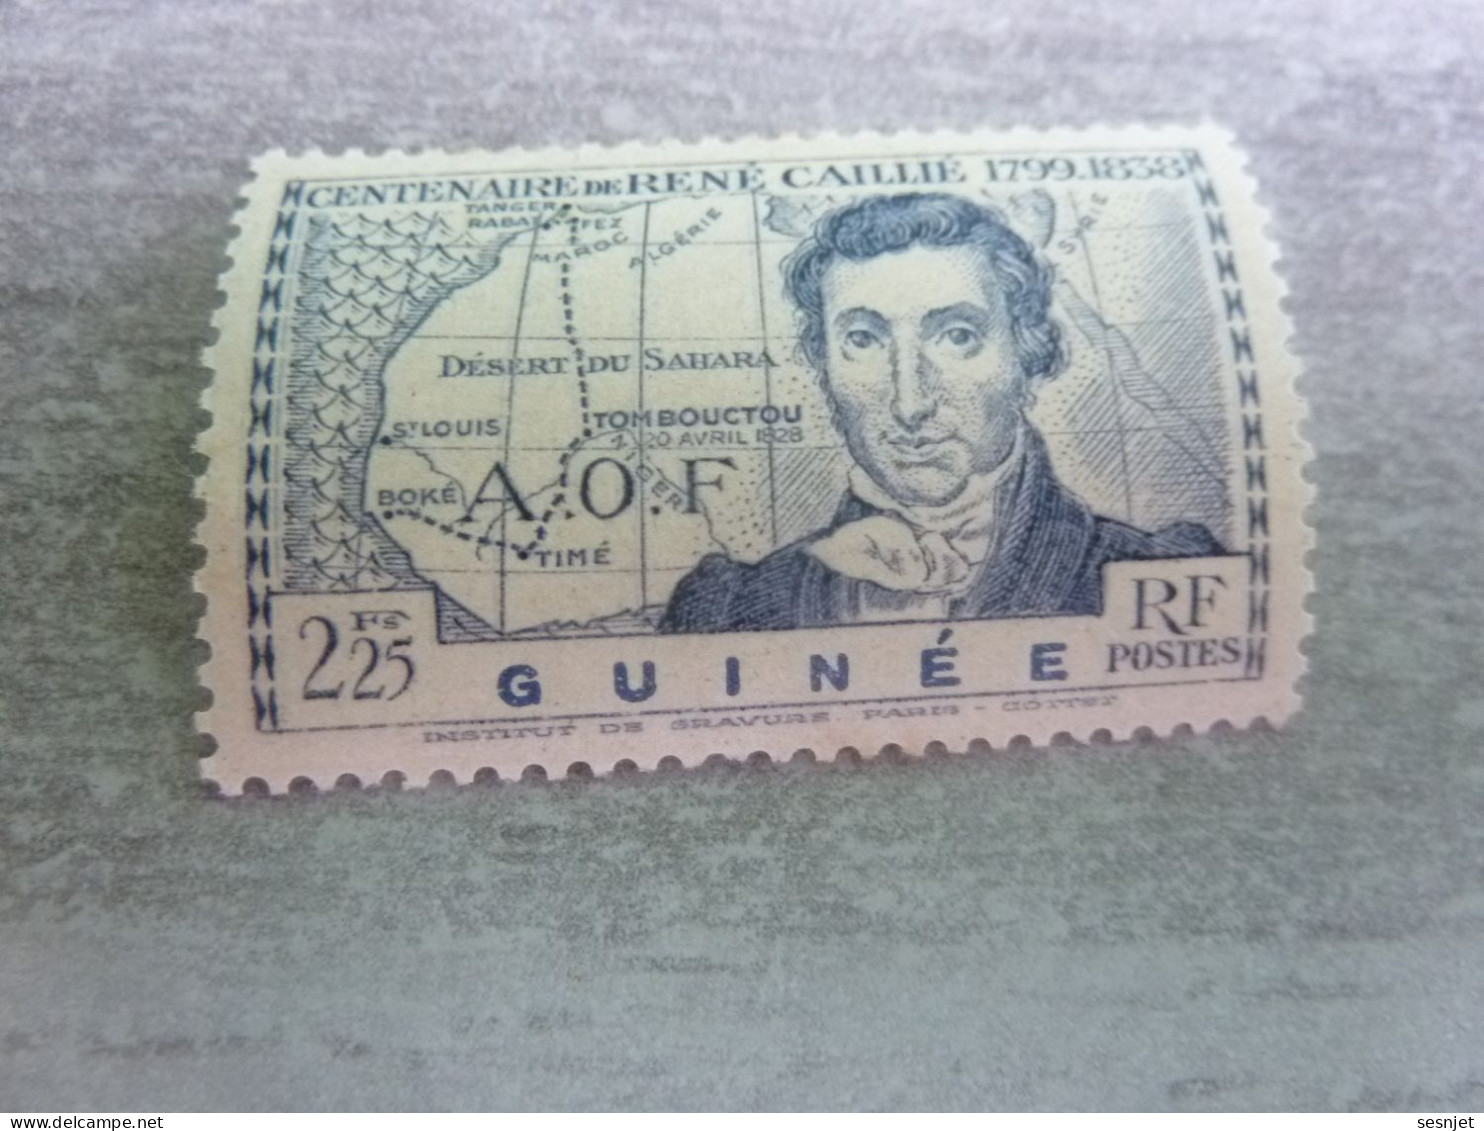 René Caillié (1709-1838) - A.o.f. - Guinée - 2f.25 - Yt 150 - Outremer - Neuf Sans Trace - Année 1939 - - Ongebruikt